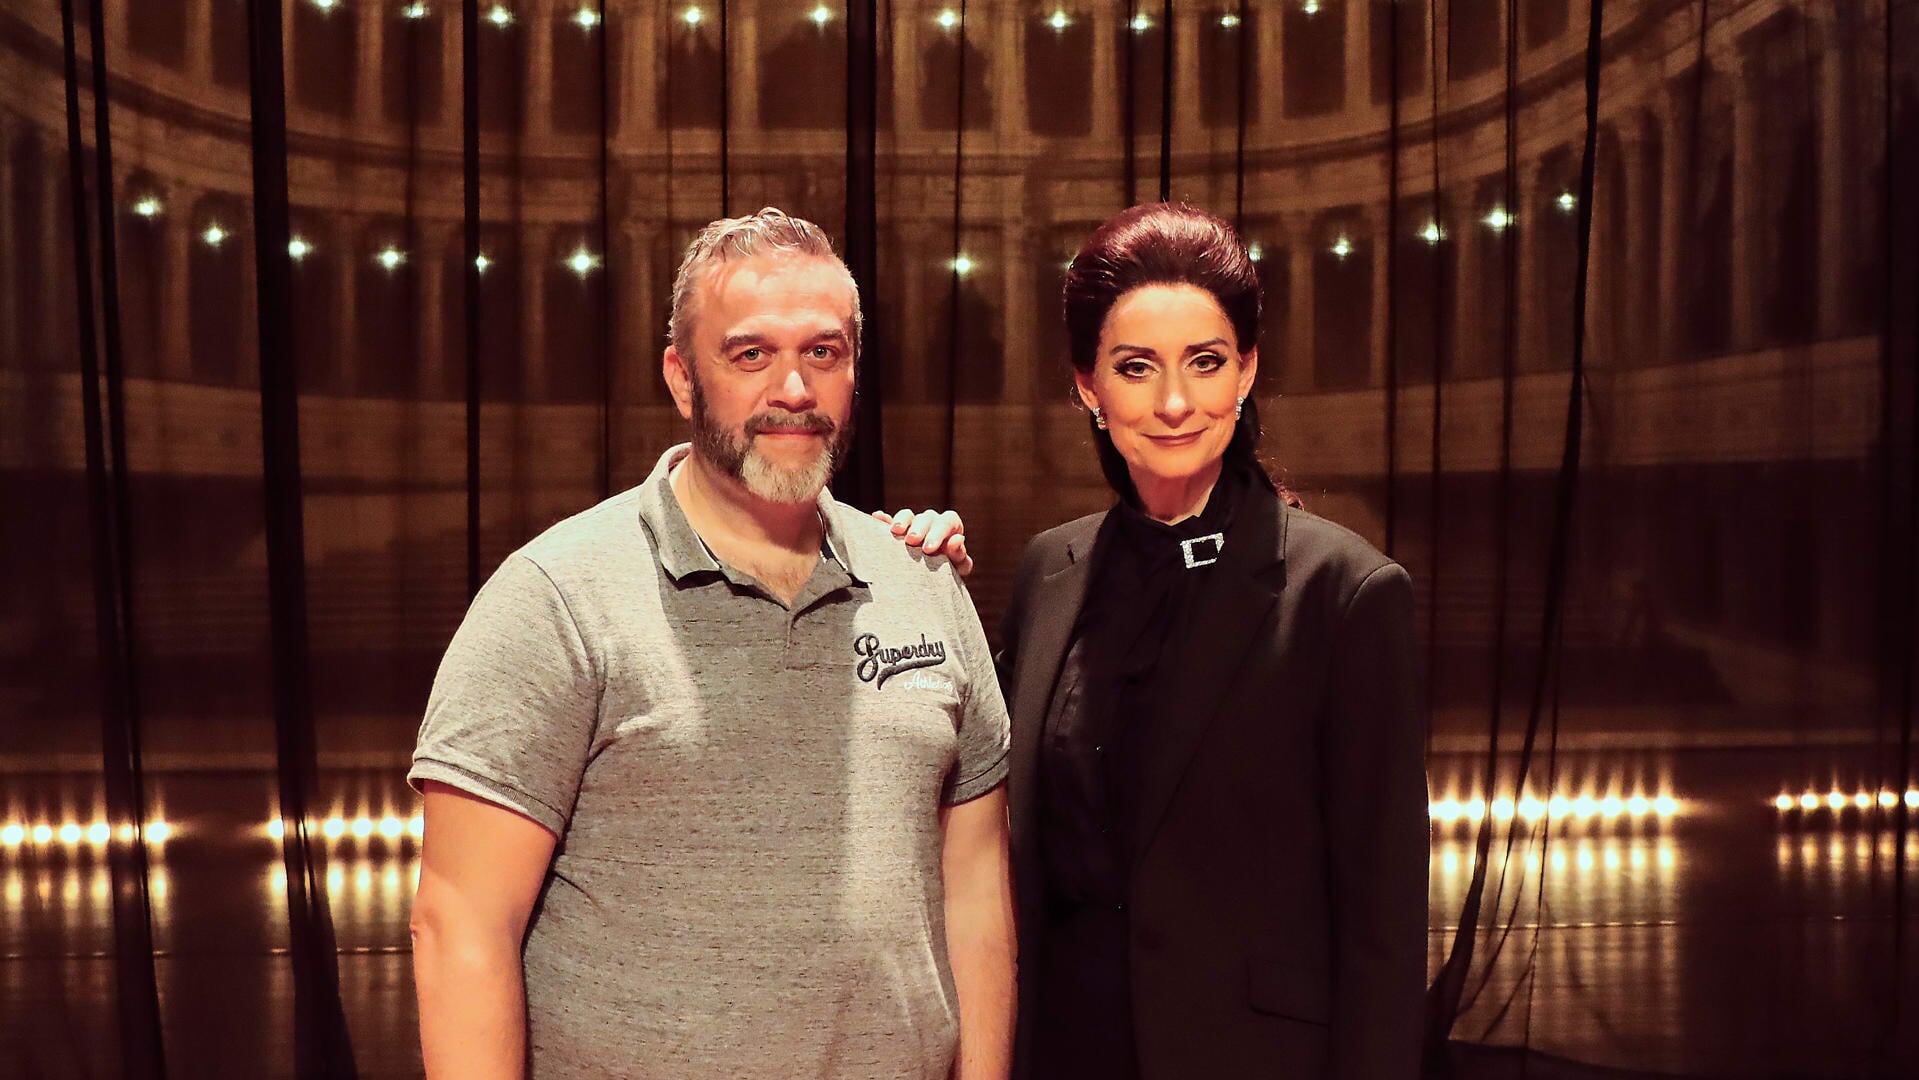 De Boskoopse theaterproducent en impresario Jean-Paul Karting presenteert Pia Douwes in de rol van Maria Callas.